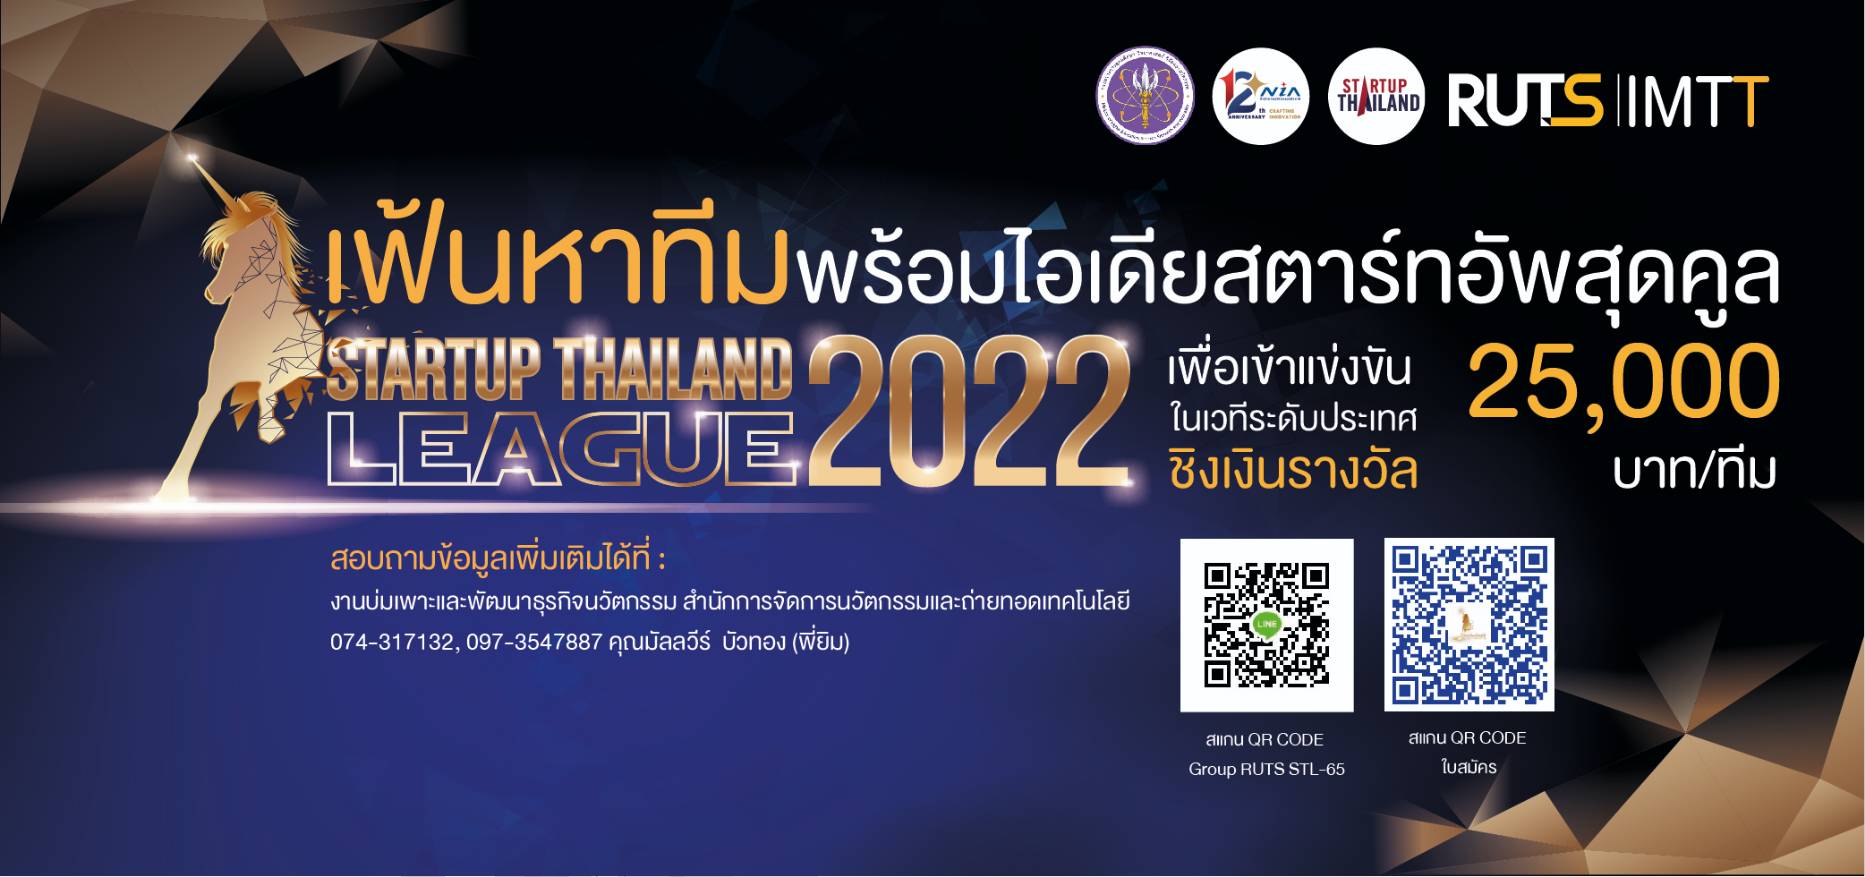 กิจกรรม Startup Thailand League 2022